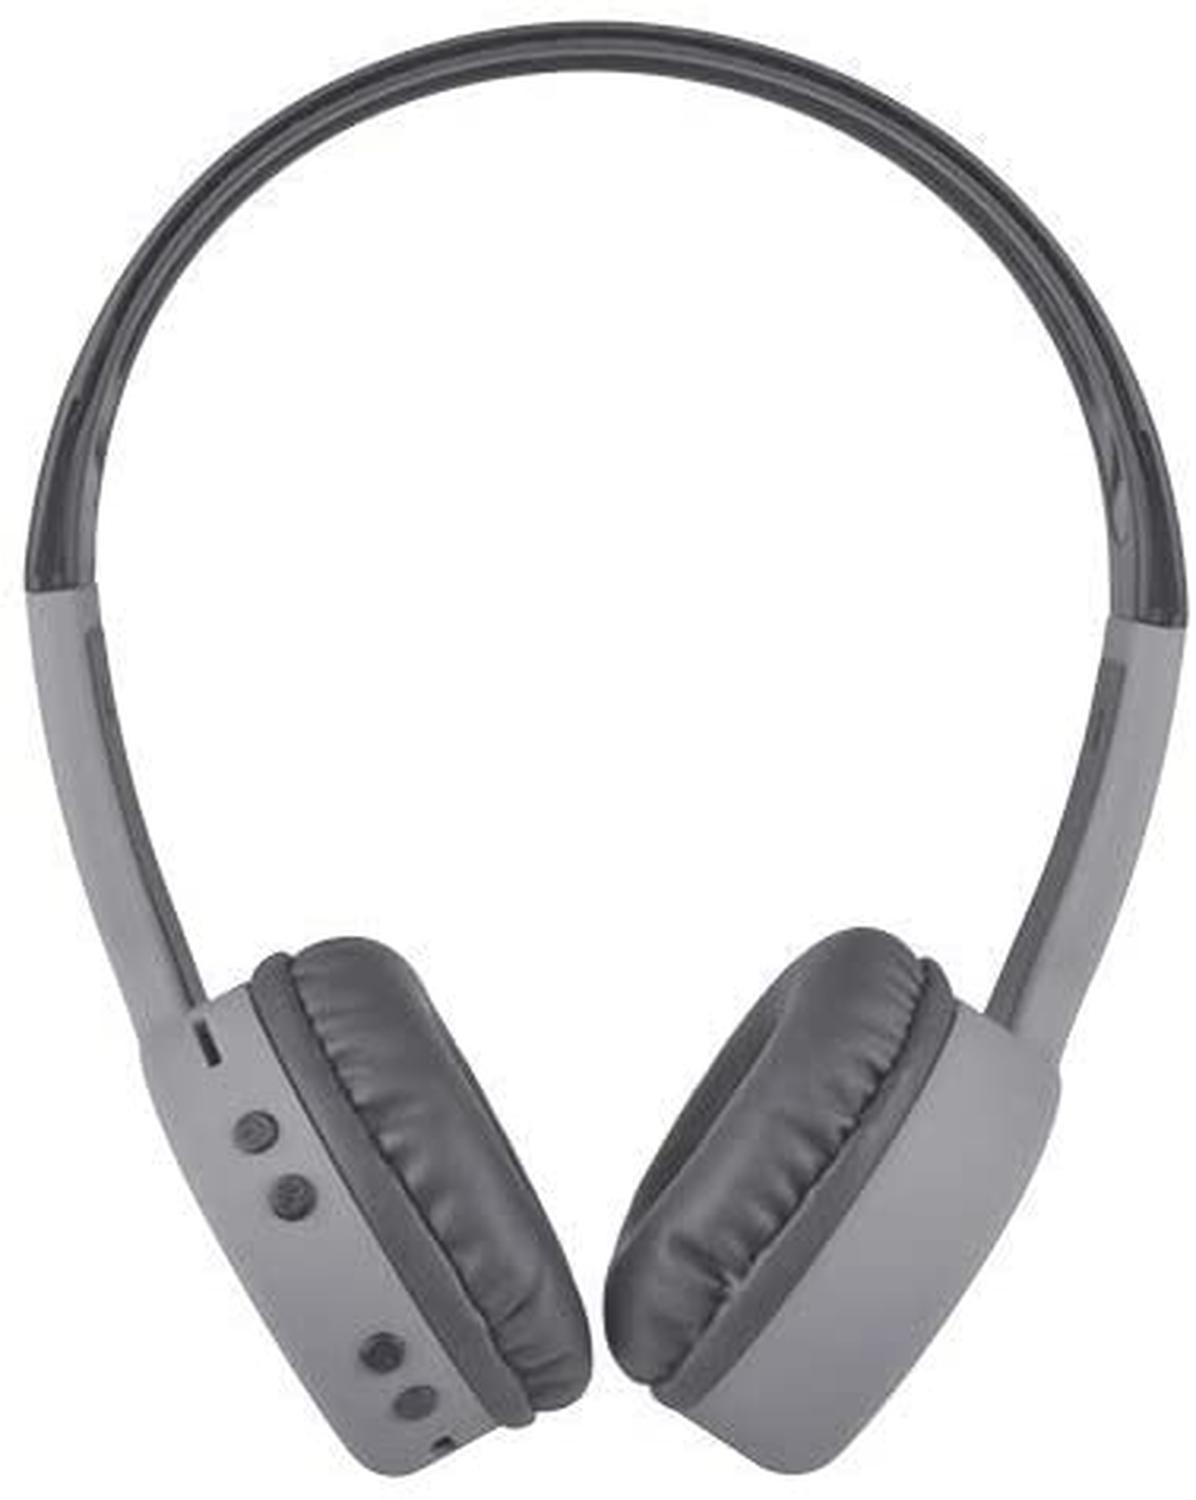 Audífonos On-Ear Easy Line Inalambricos, Gris/EL-995265